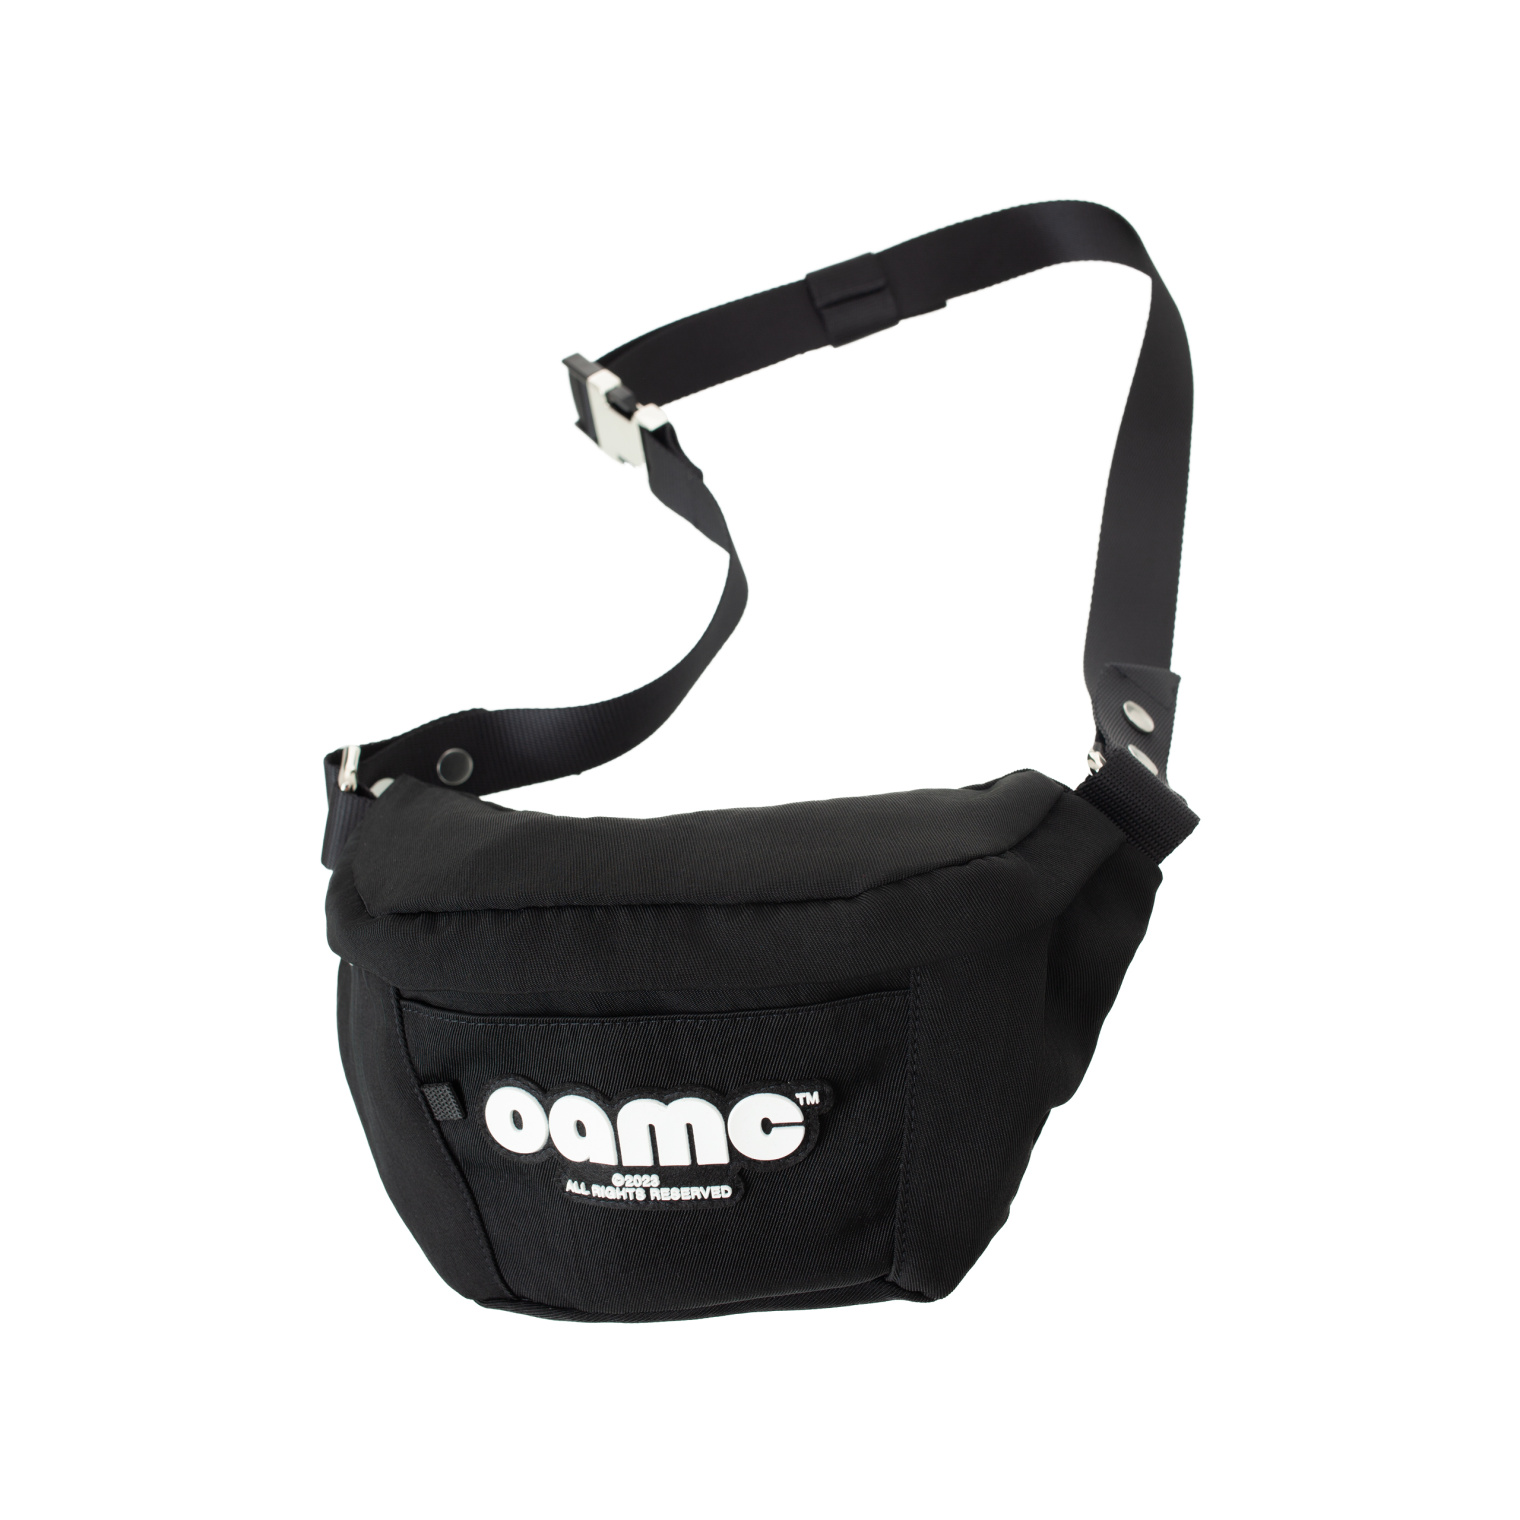 OAMC Logo belt bag